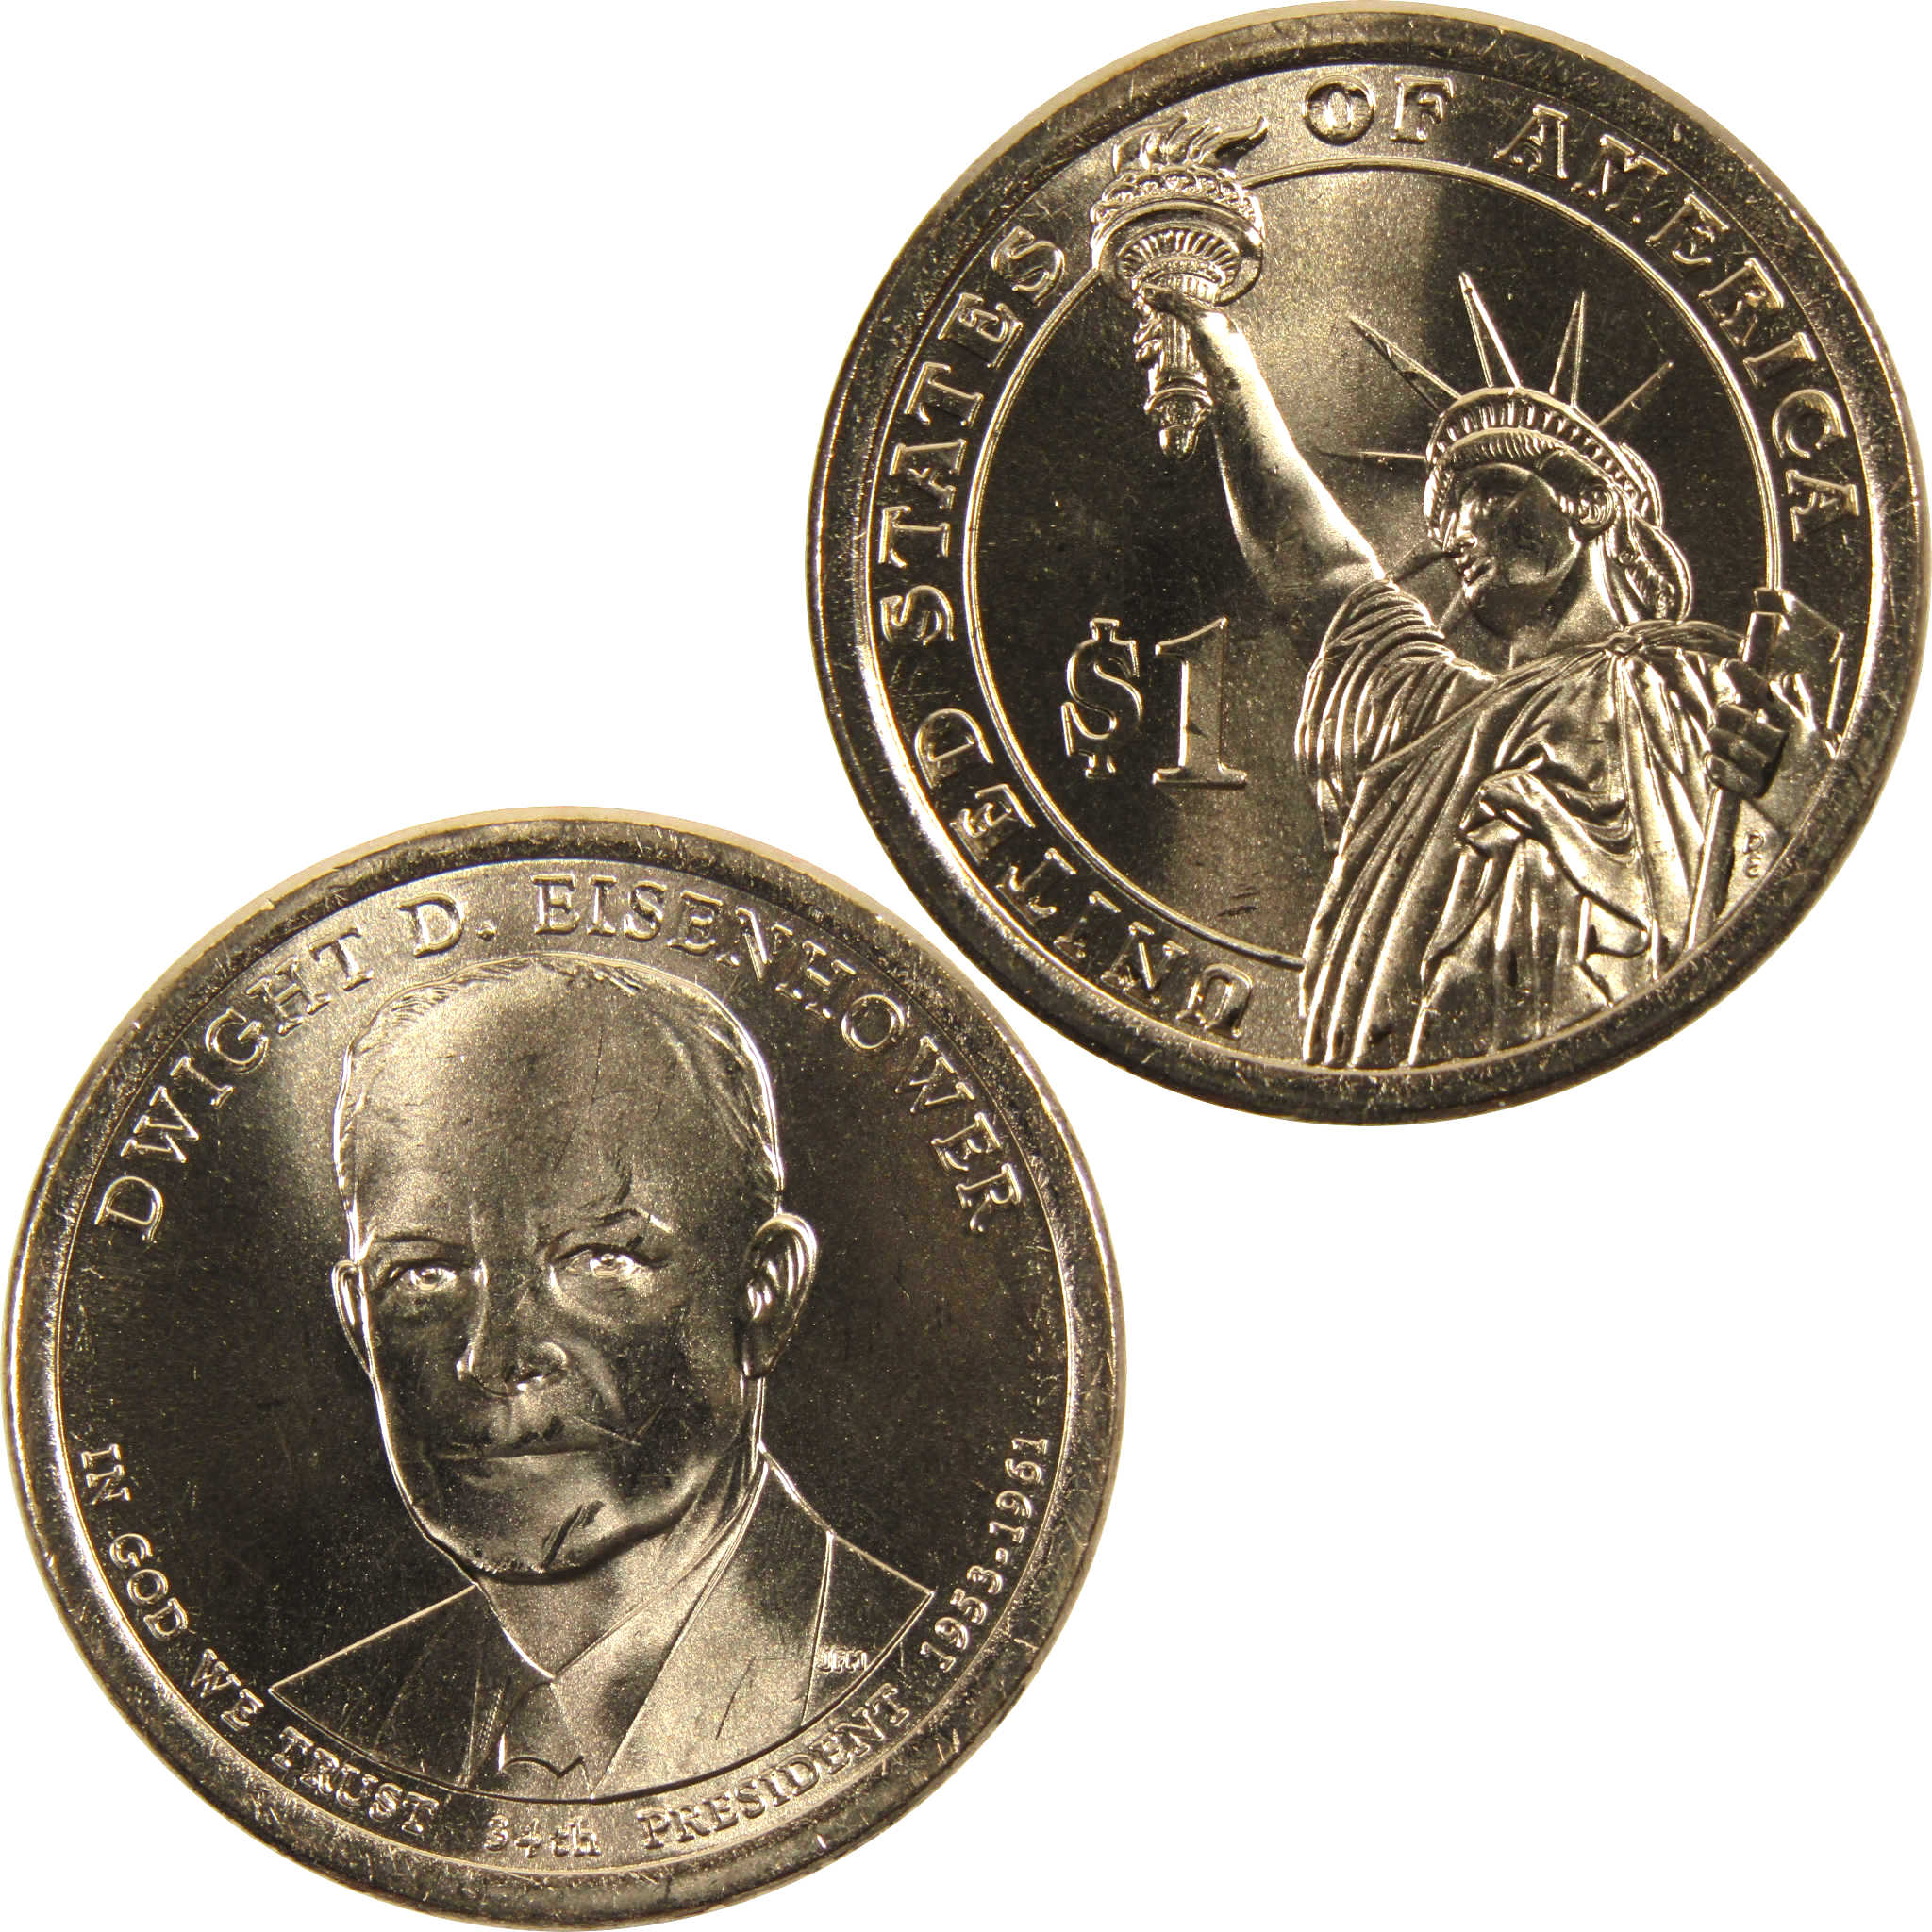 2015 D Dwight D Eisenhower Presidential Dollar BU Uncirculated $1 Coin